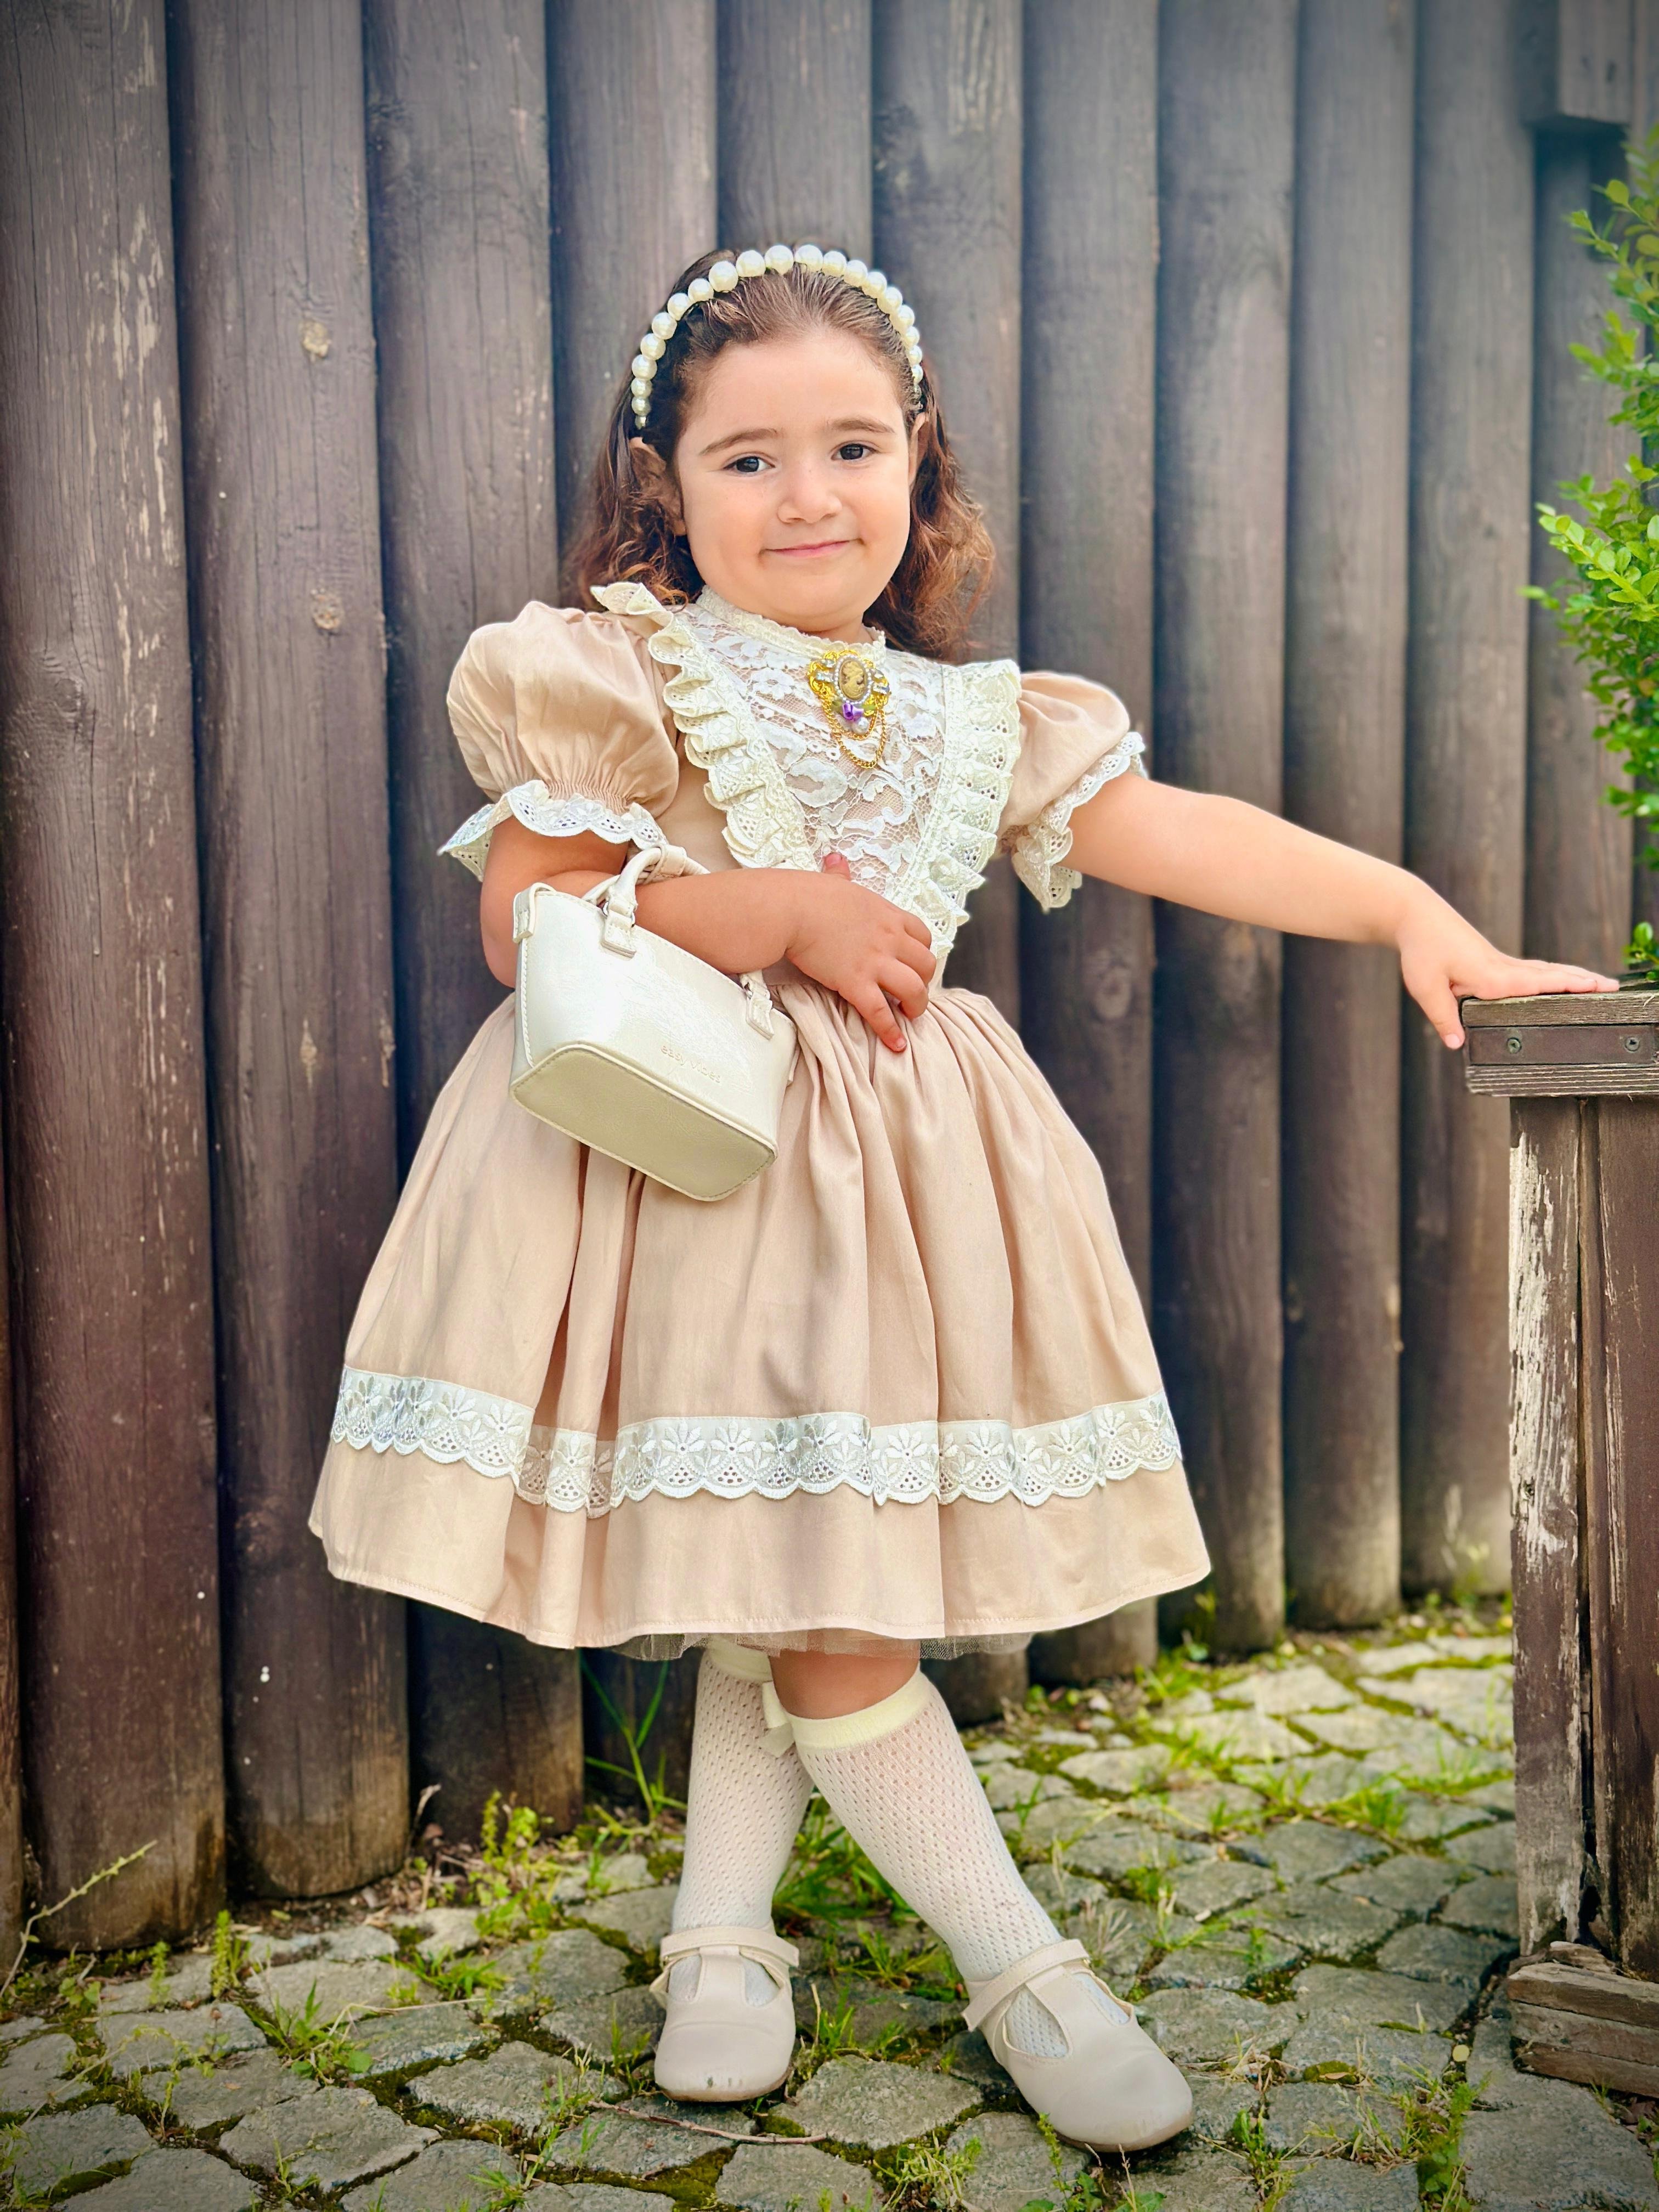 Kapiçino Dantelli Vintage Kız Bebek Elbisesi,Doğum günü,fotoğraf çekim elbise,0-12 Yaş Uygun - Kapiçino